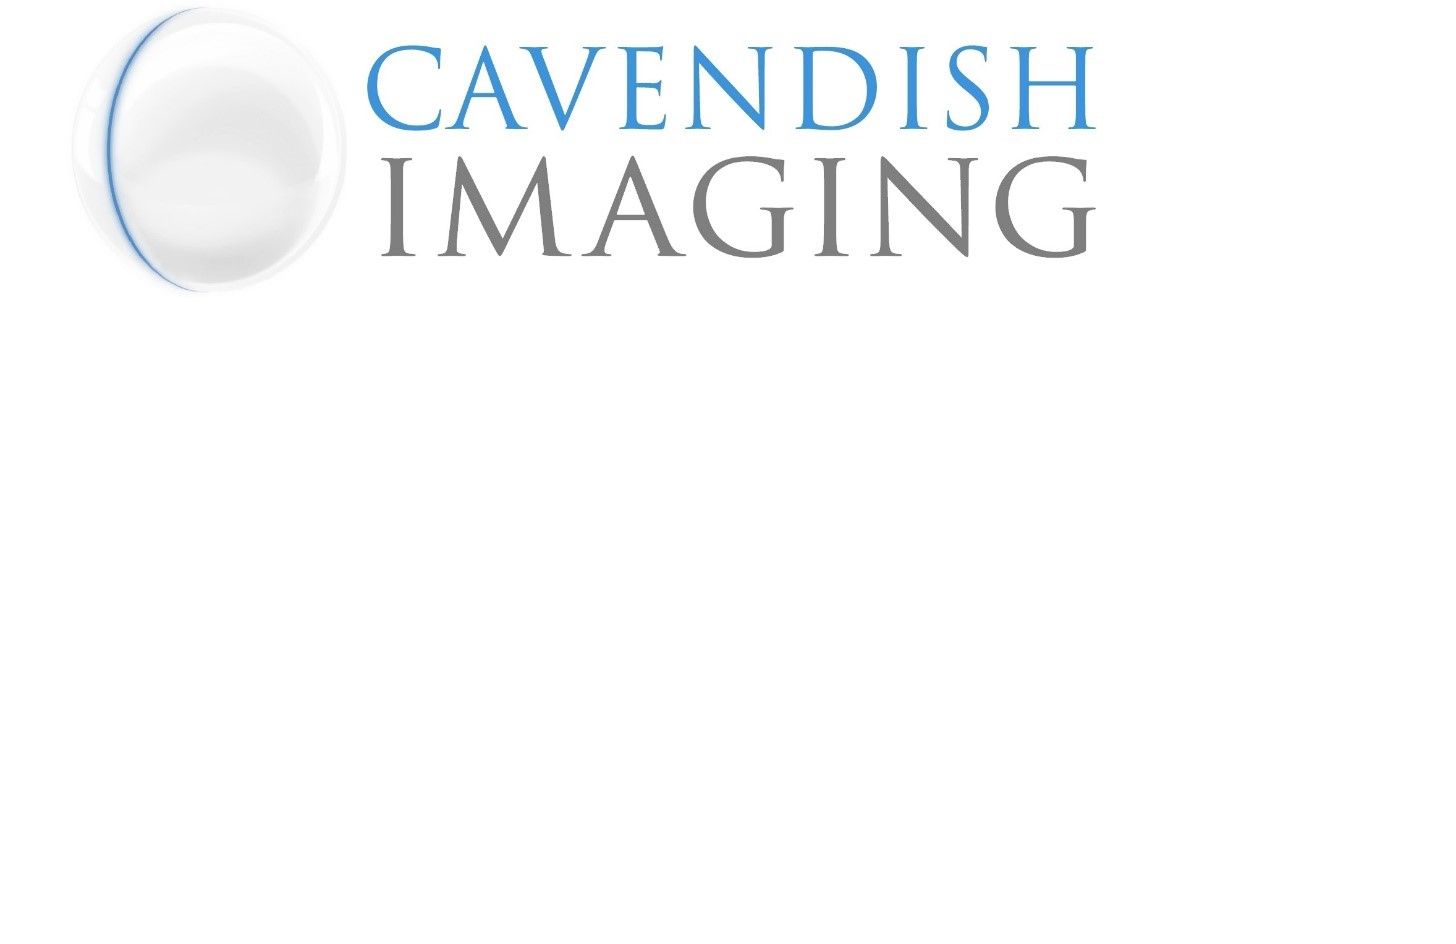 Cavendish Imaging Ltd